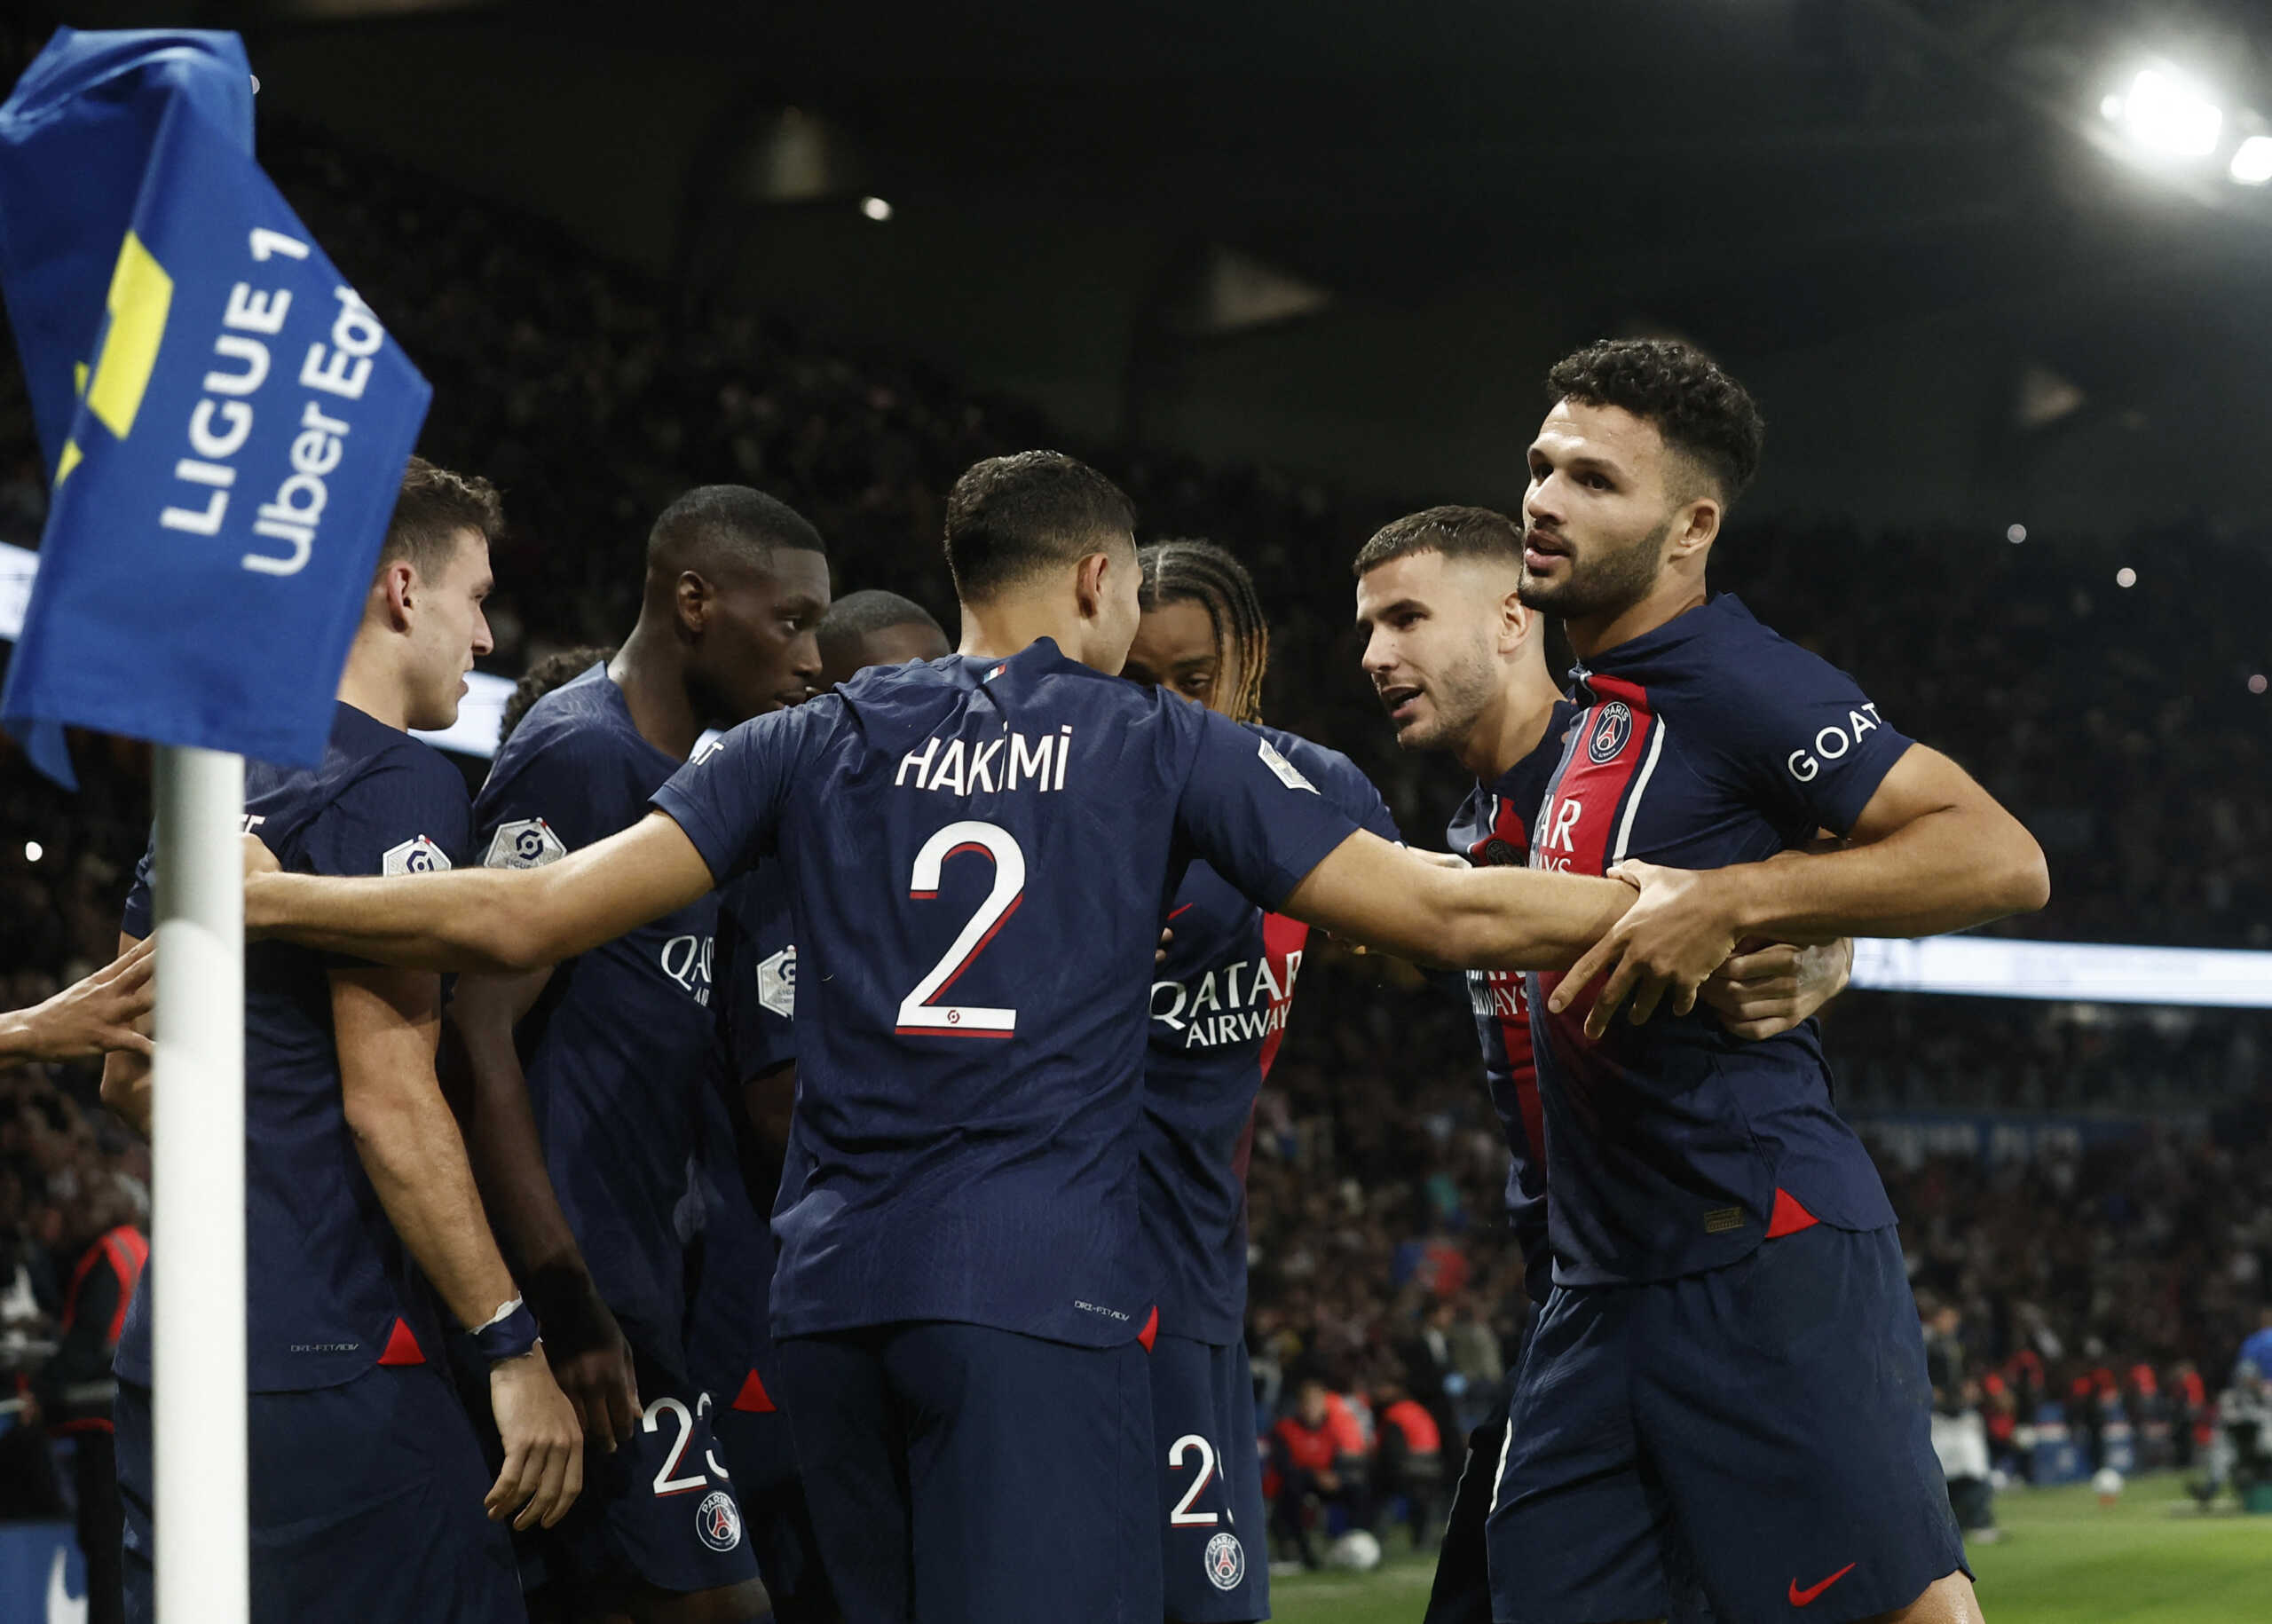 Παρί Σεν Ζερμέν – Μαρσέιγ 4-0 στο ντέρμπι της Ligue 1